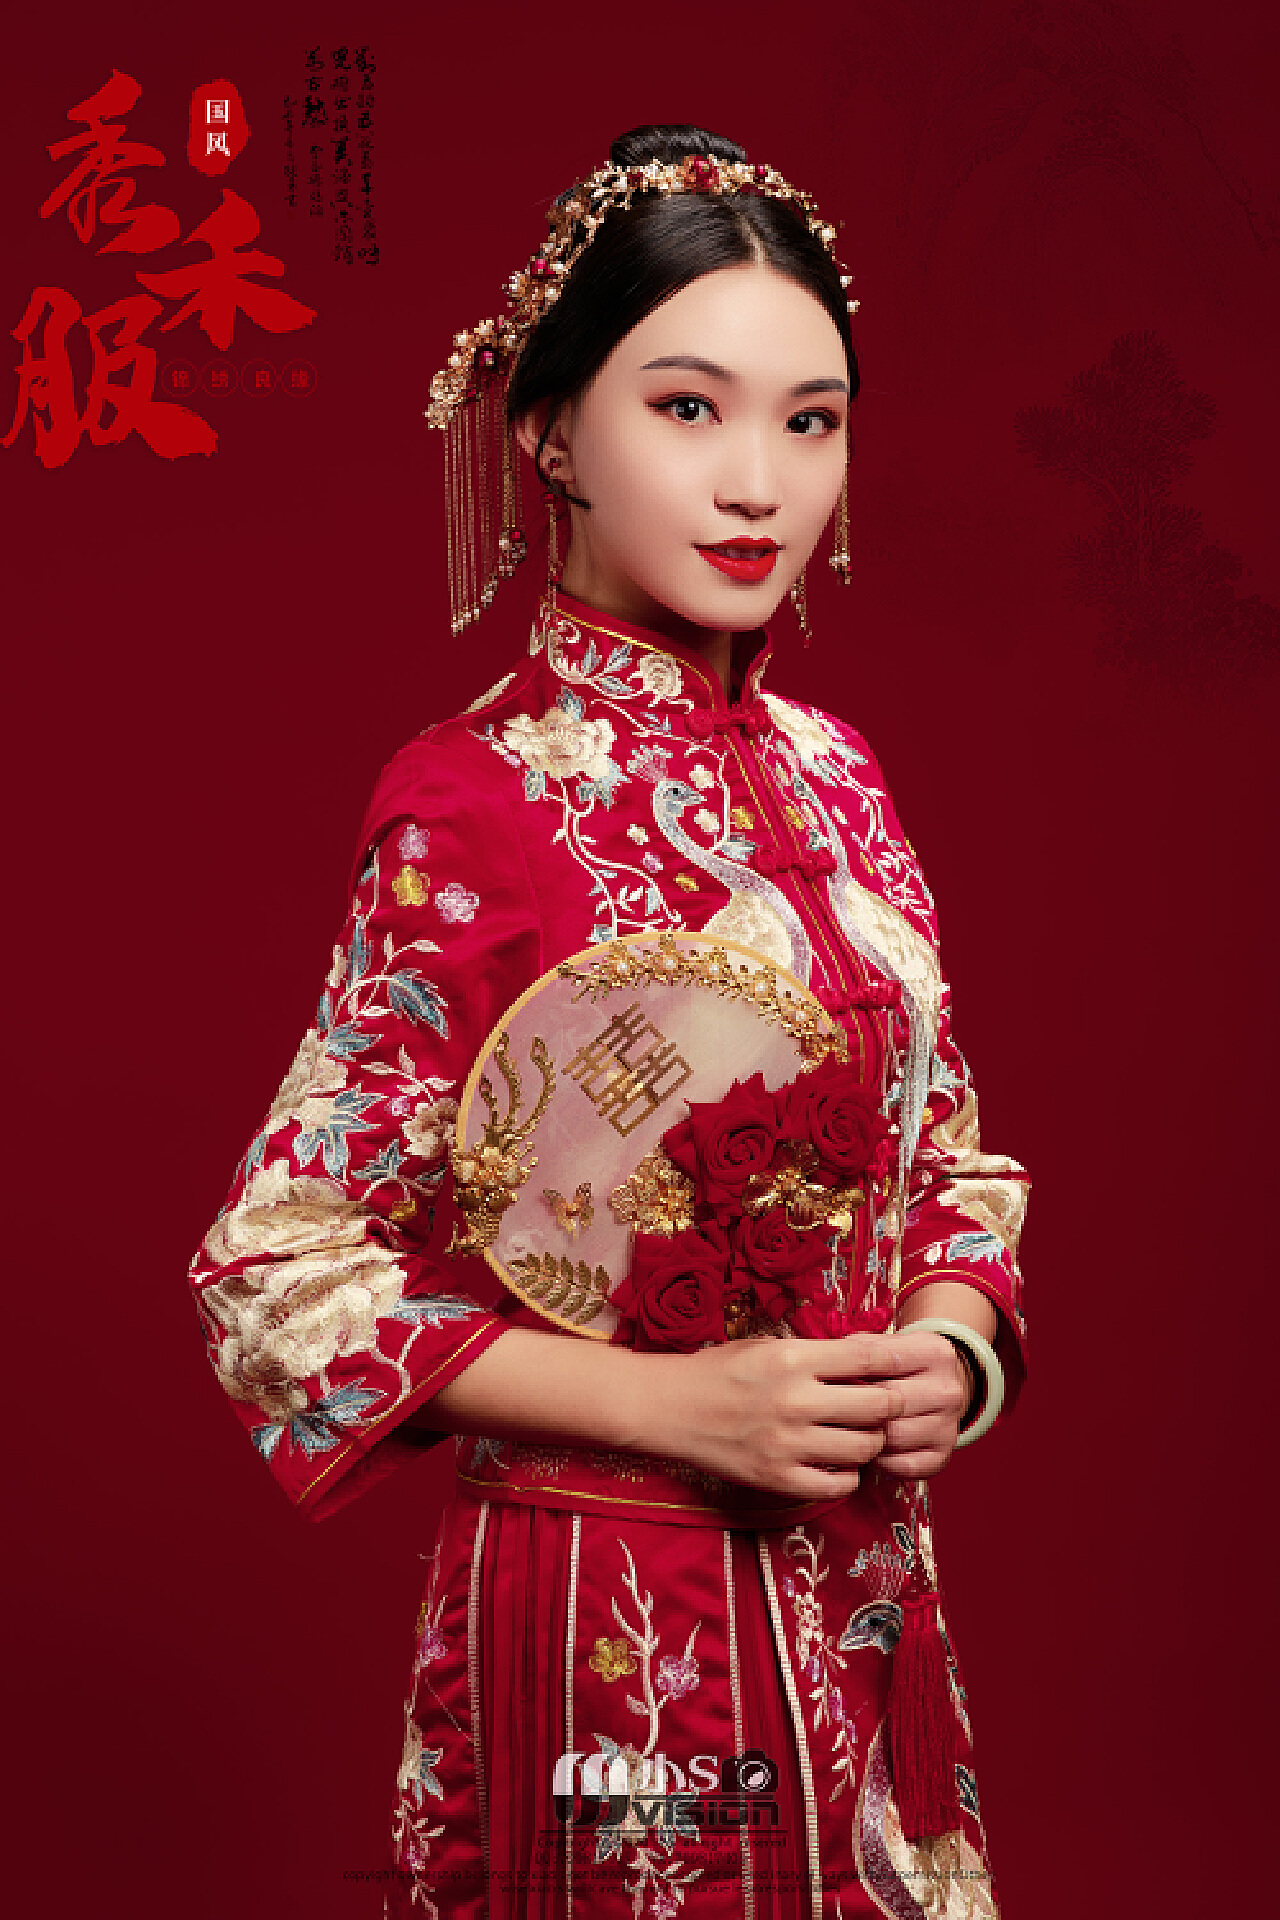 中式情书东方父母都偏爱的秀禾服婚纱照 - 哔哩哔哩